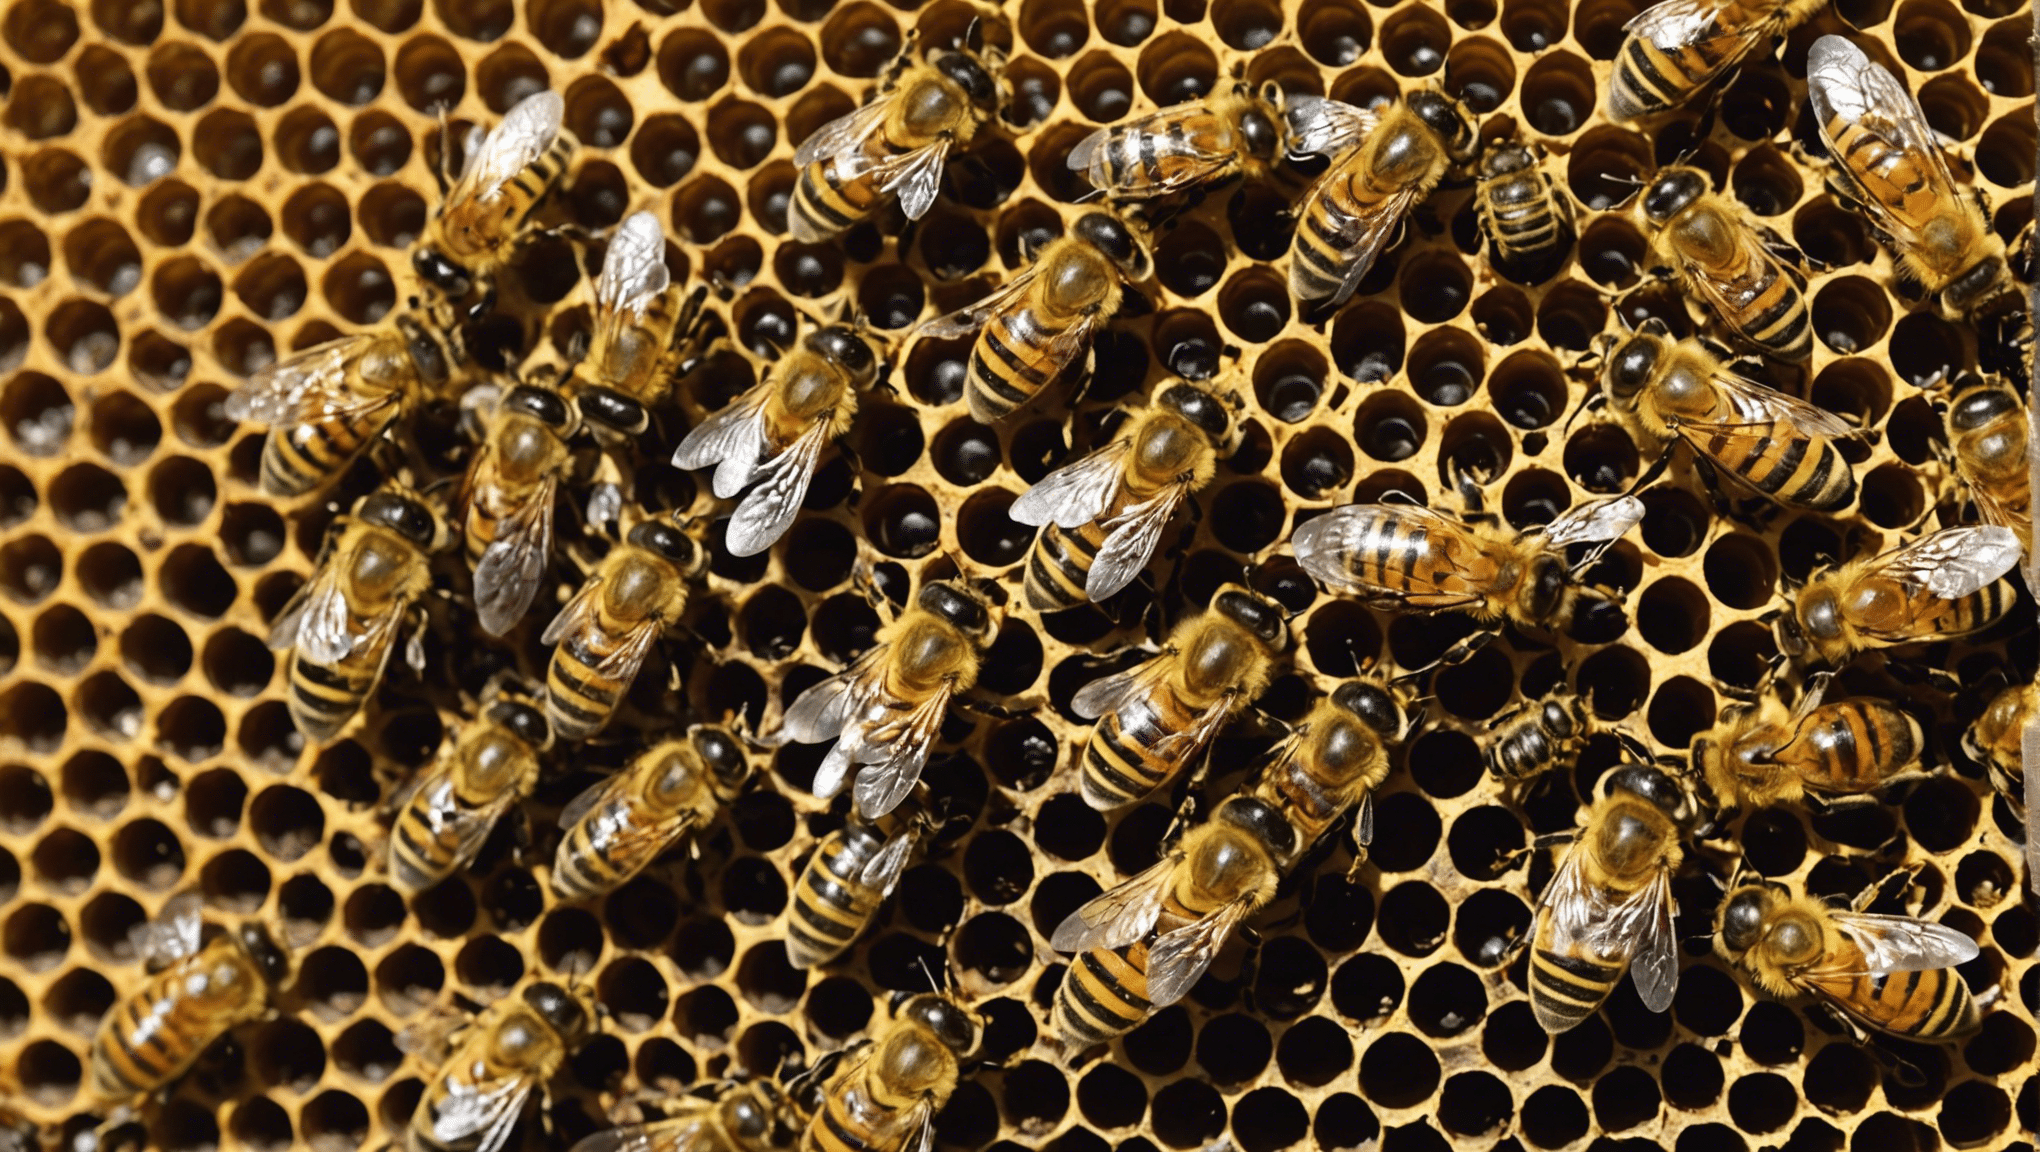 découvrez comment les abeilles jouent un rôle crucial en tant que sentinelles de l'environnement. apprenez comment leur comportement offre des indications précieuses sur la santé de notre écosystème.